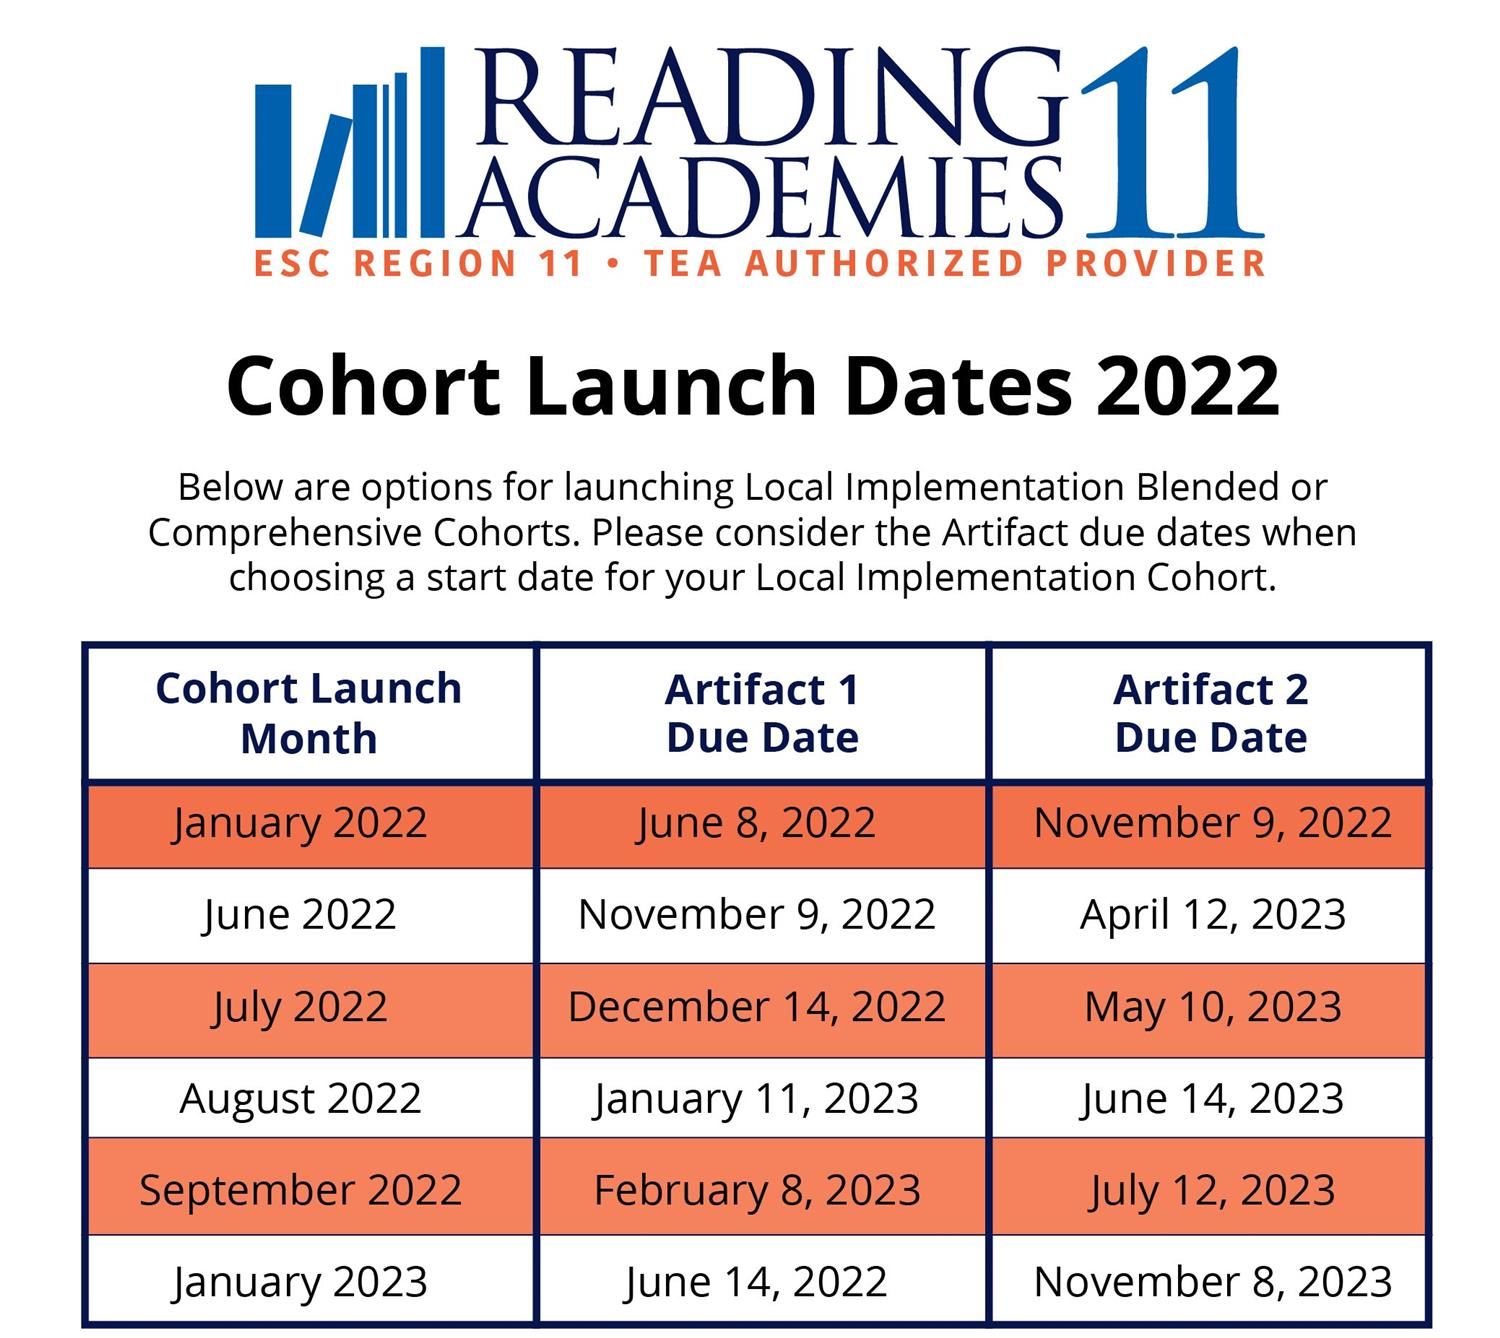 Cohort Launch Dates 2022